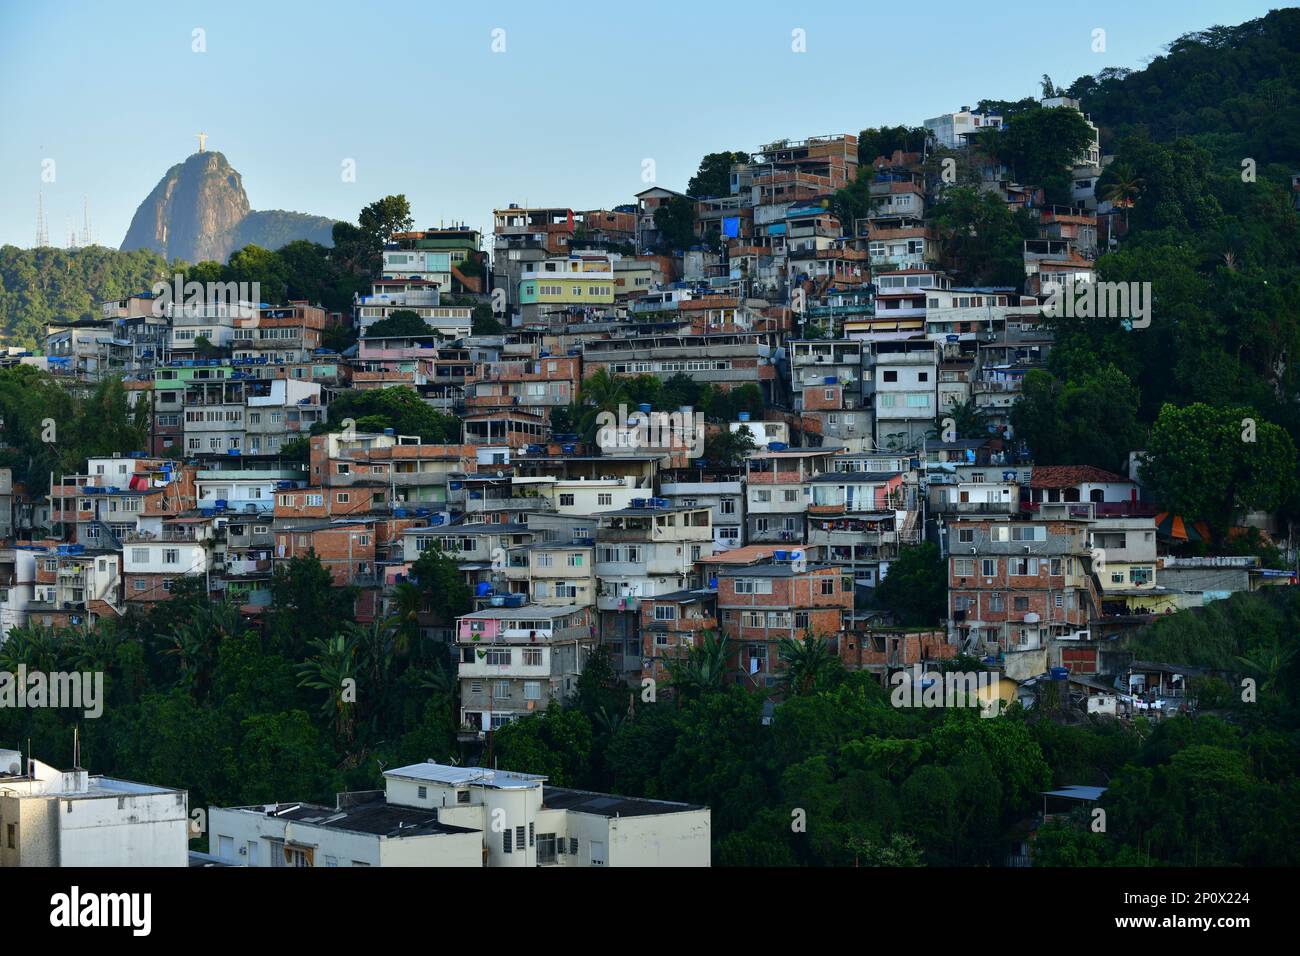 Favela de Tabaraja mit dem Berg Corcovado und der Statue von Christus dem Erlöser im Hintergrund, Rio de Janeiro, Brasilien Stockfoto